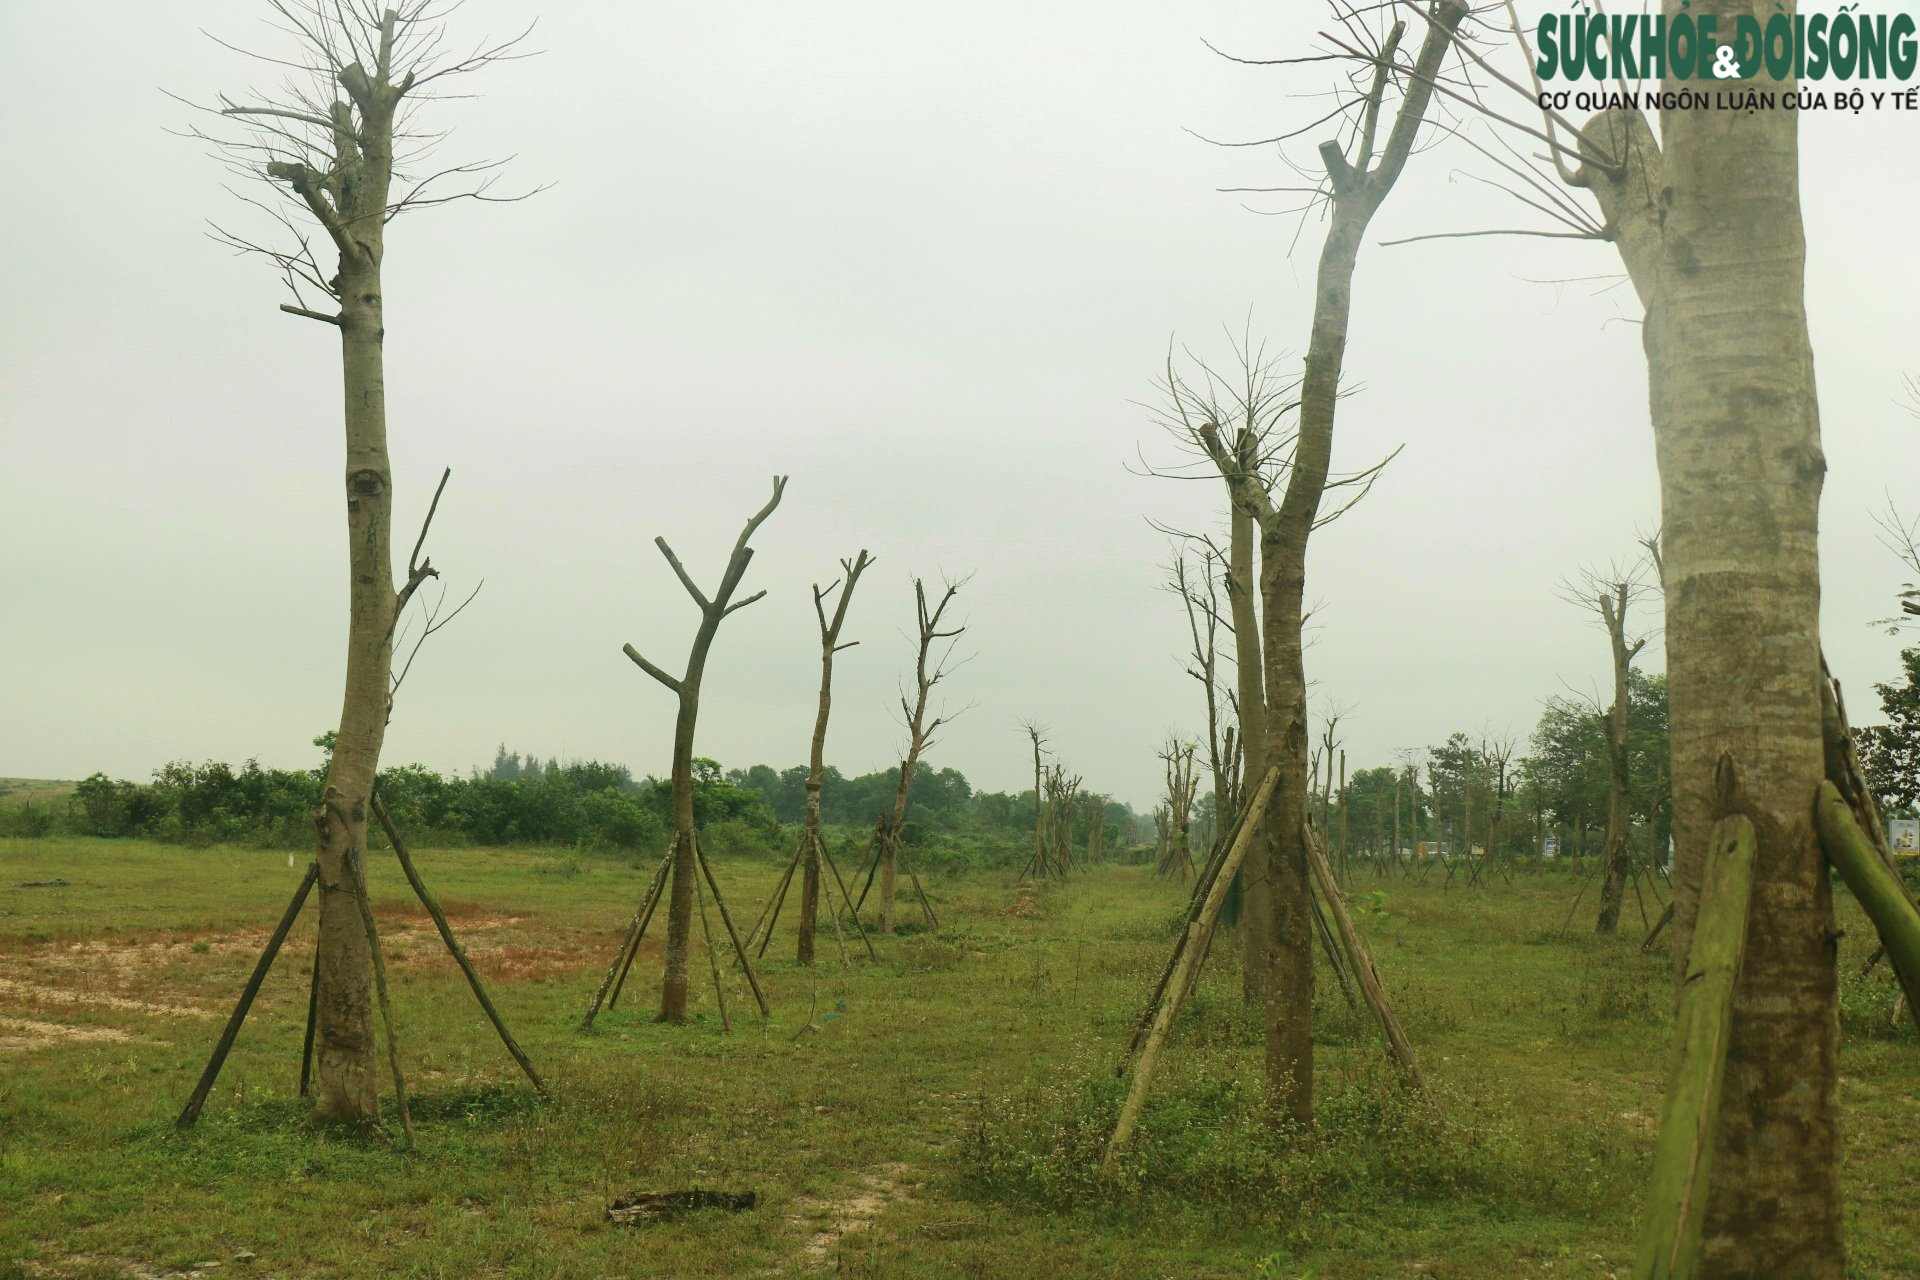 Thừa Thiên Huế: Hàng loạt cây xanh tạo điểm nhấn cho cửa ngõ phía Nam tróc vỏ, chết khô - Ảnh 2.